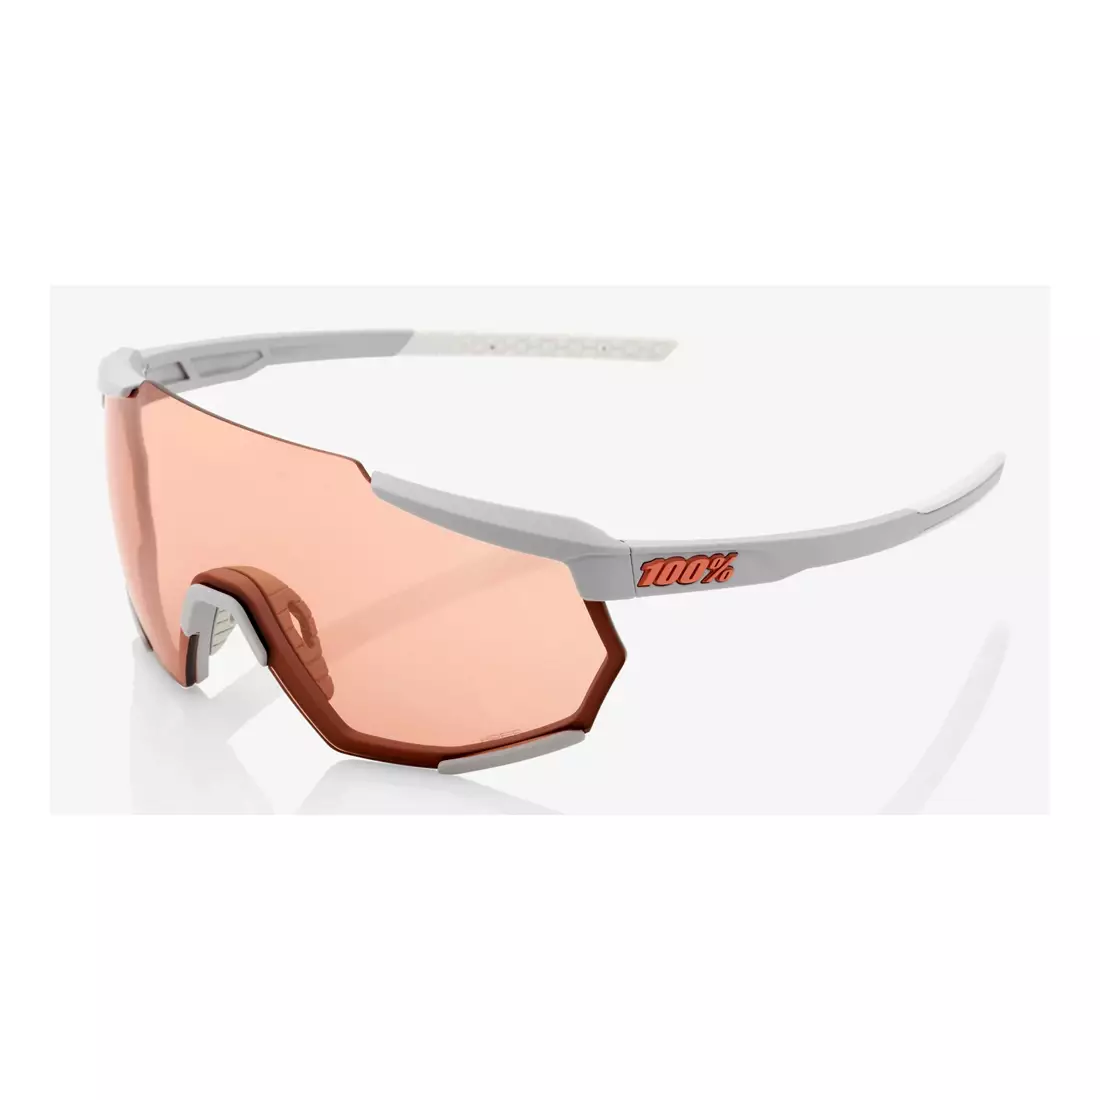 100% sportovní brýle RACETRAP (korálové sklo, LT 52% + průhledné sklo, LT 93%) soft tact stone grey STO-61037-289-79